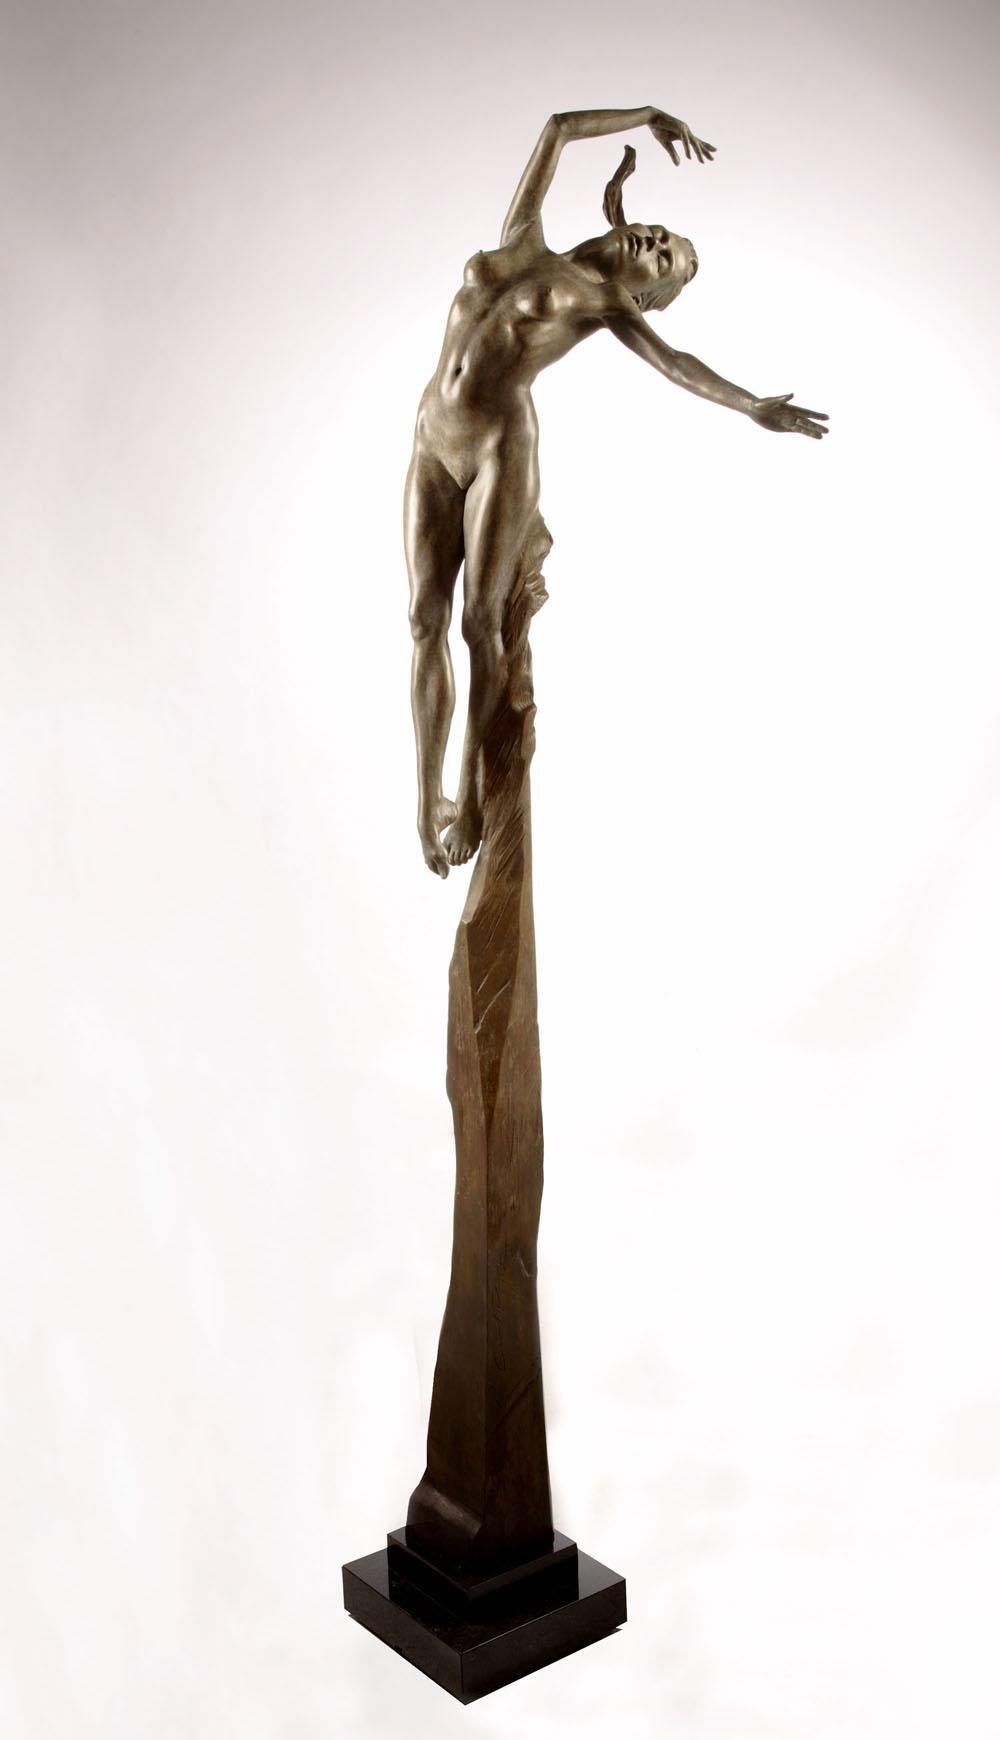 Figurative Sculpture Carl Payne  - Nu contemporain, sculpture figurative en bronze Athéna - La déesse de la sagesse